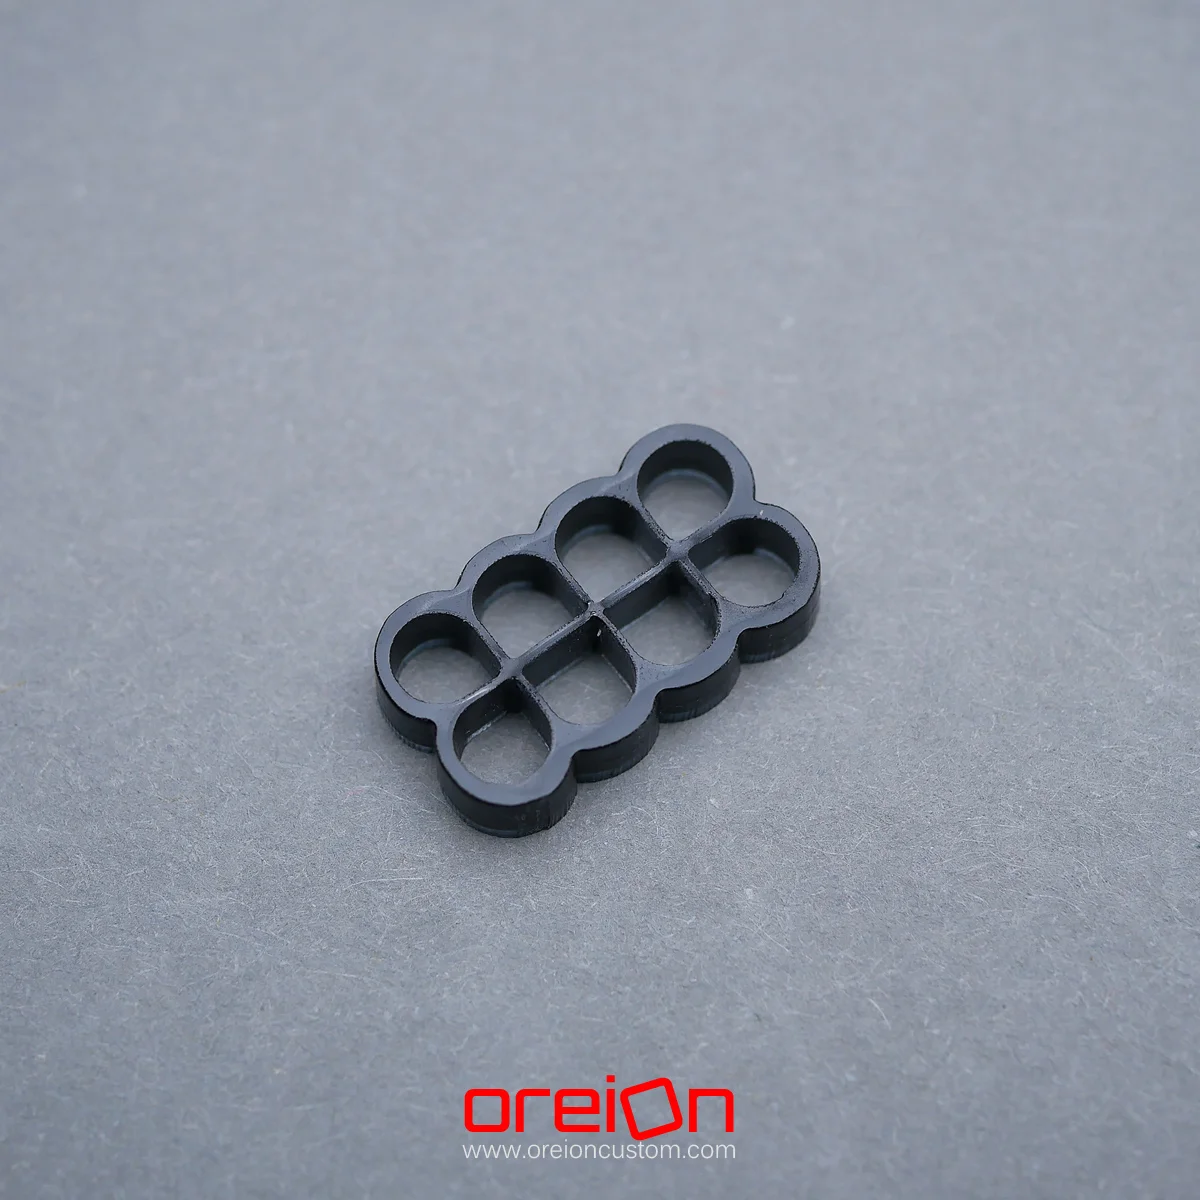 oreioncustom Cable Comb – black Closed 8 pin